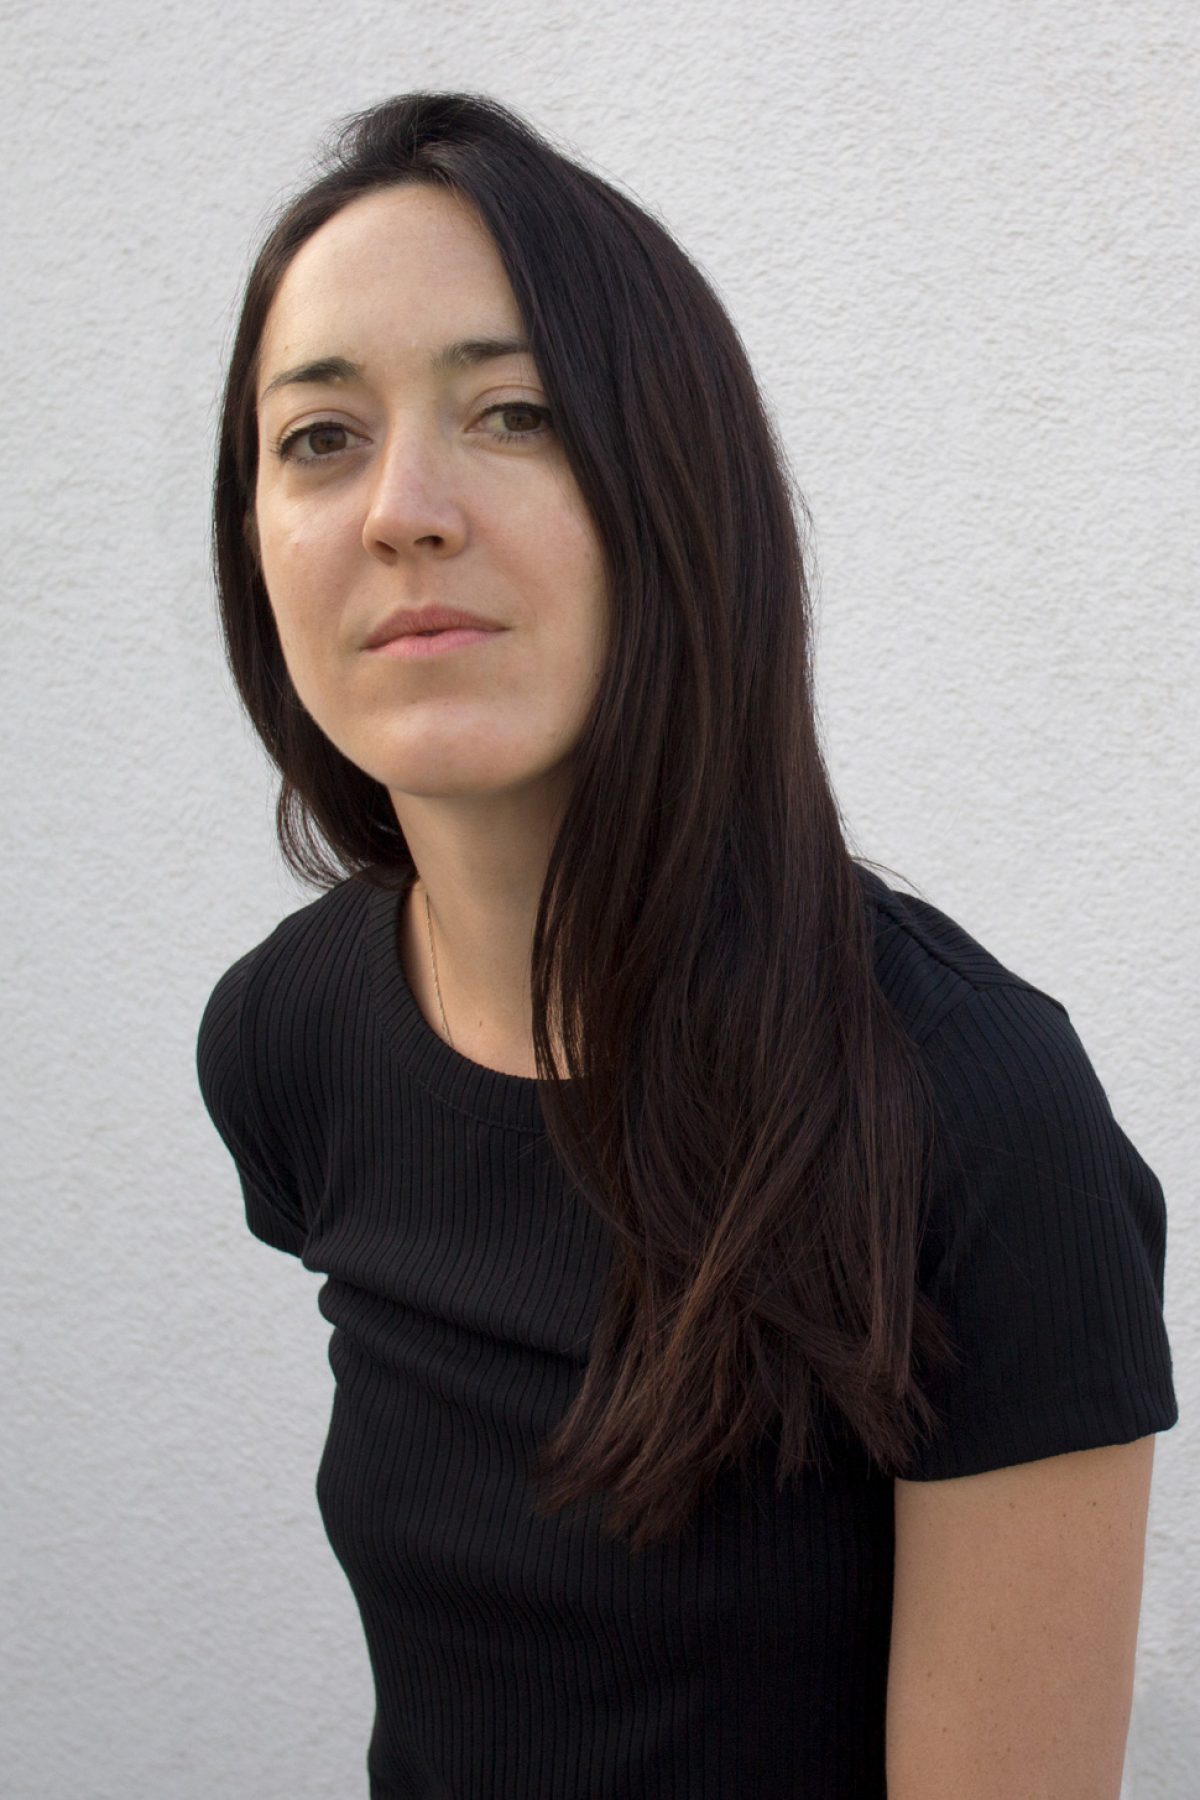 Director Dominga Sotomayor